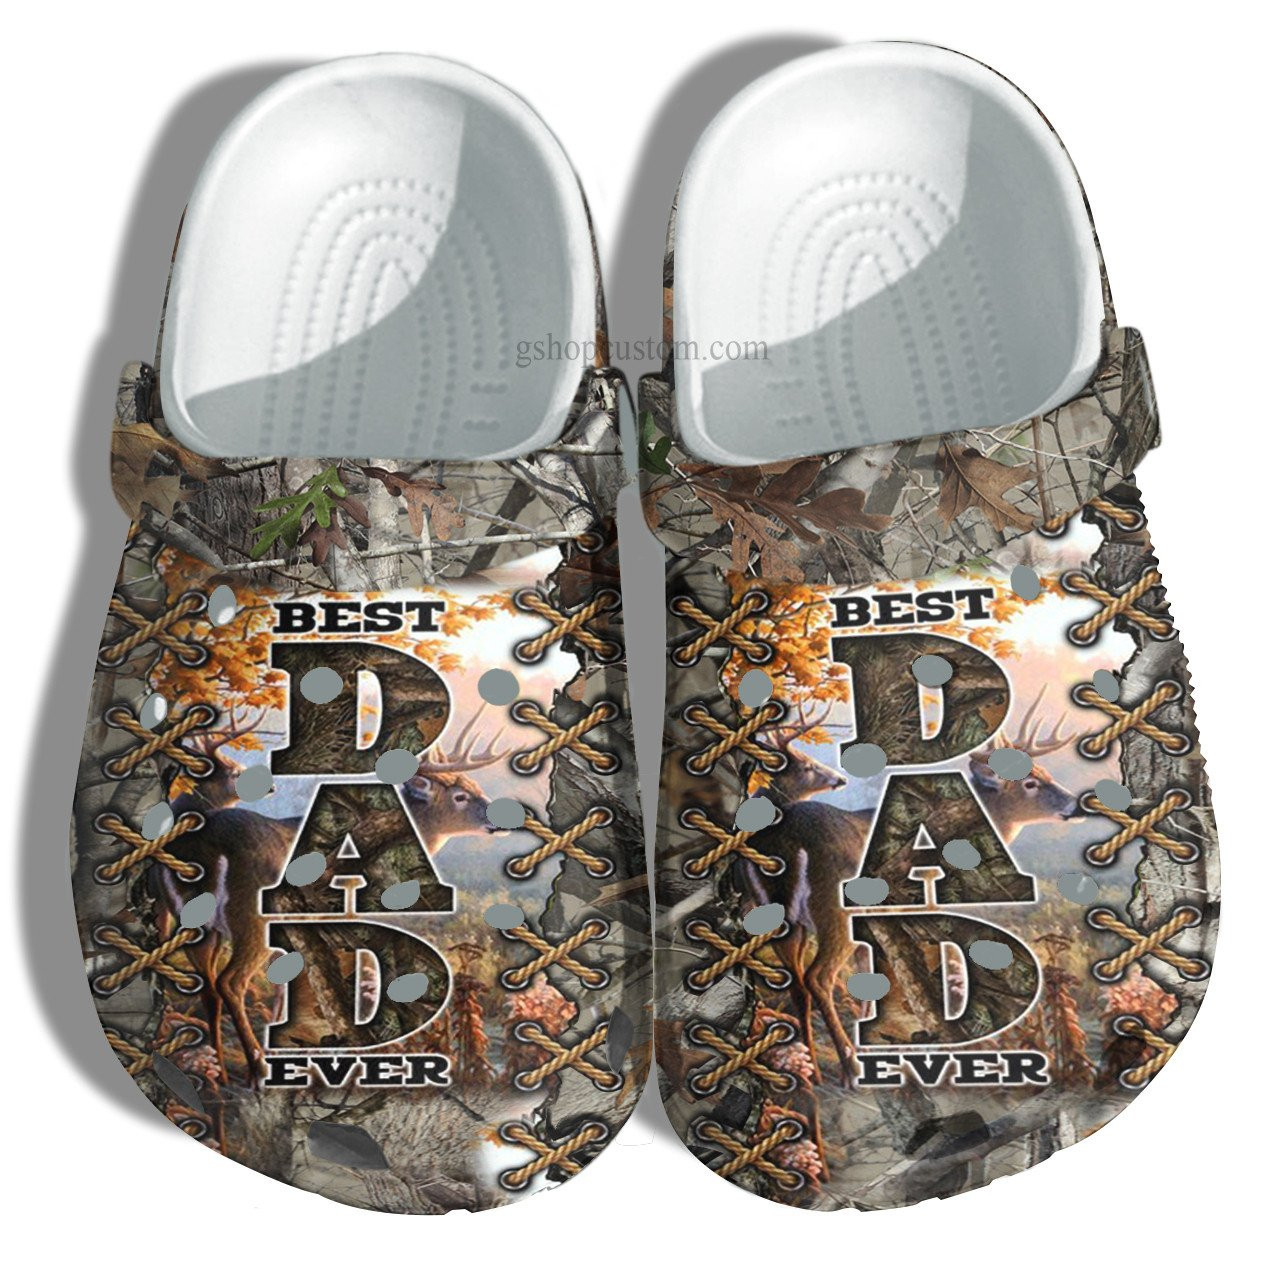 Best Dad Ever Deer Hunter Croc Crocs Clog Shoes Gift Uncle Father Day- Deer Hunting Camo Vintage Crocs Clog Shoes